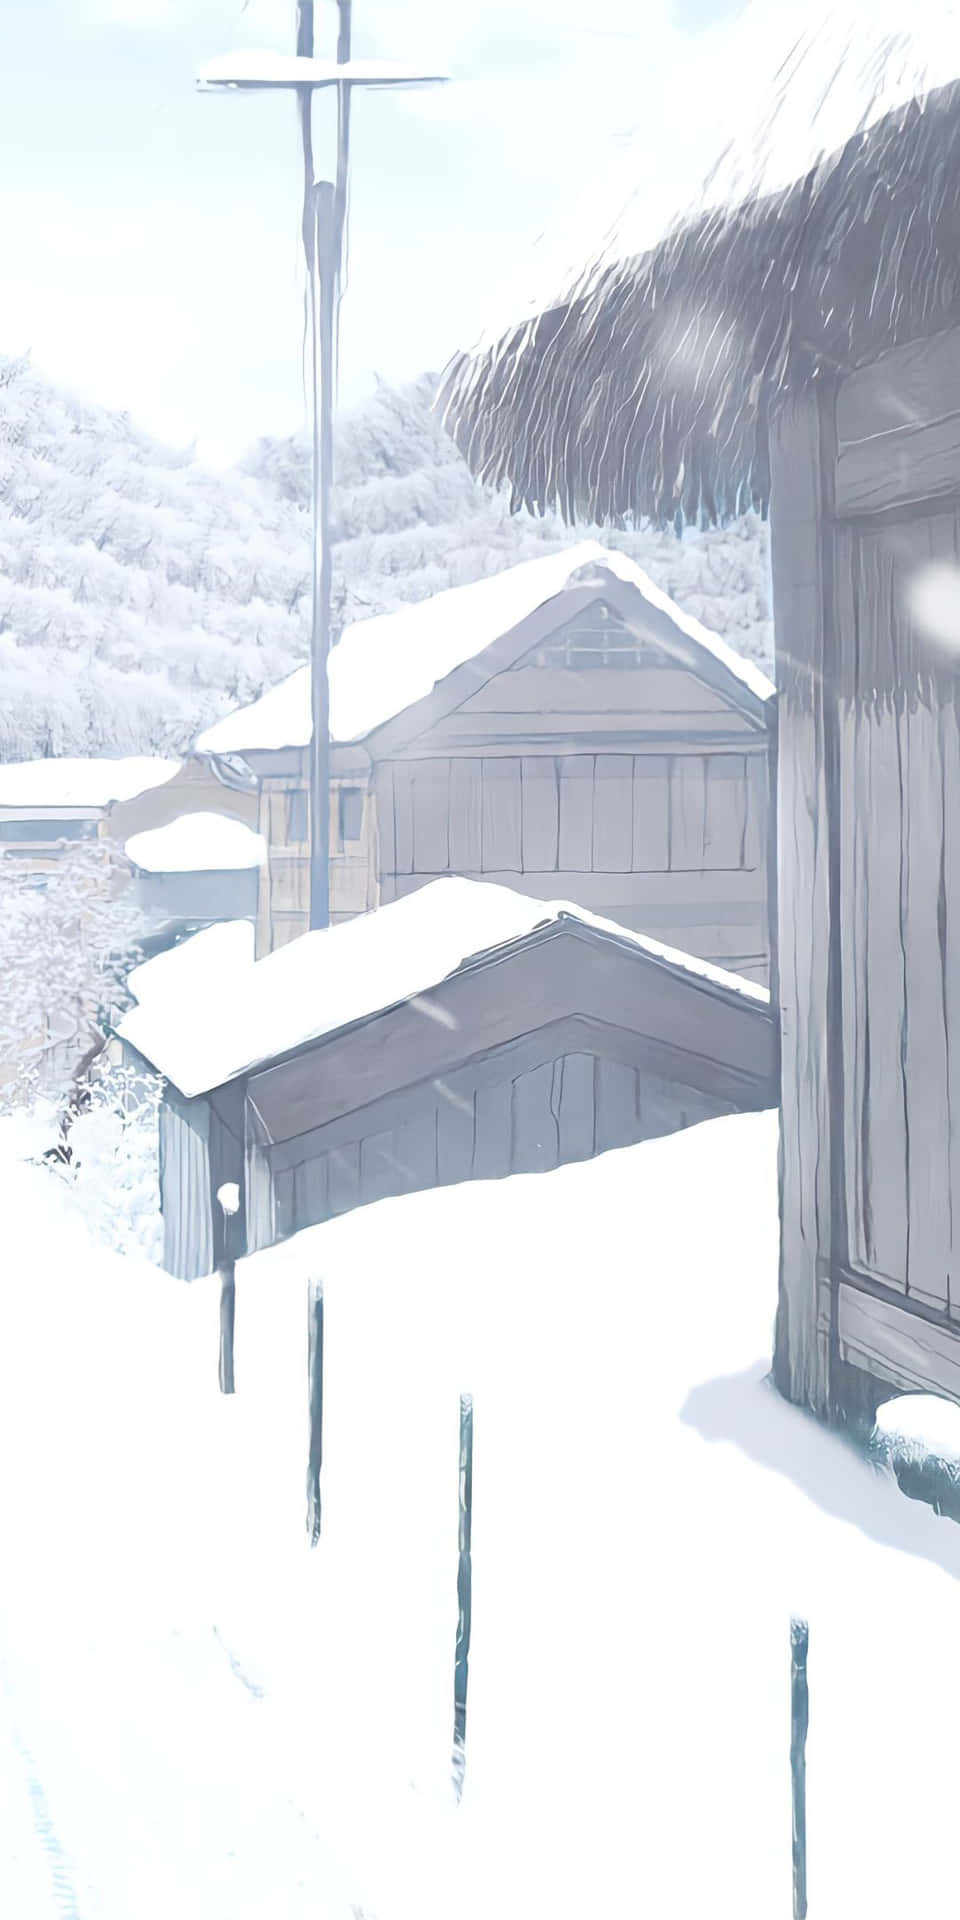 Sfondoinvernale Per Pixel 3: Case Di Legno Coperte Di Neve.